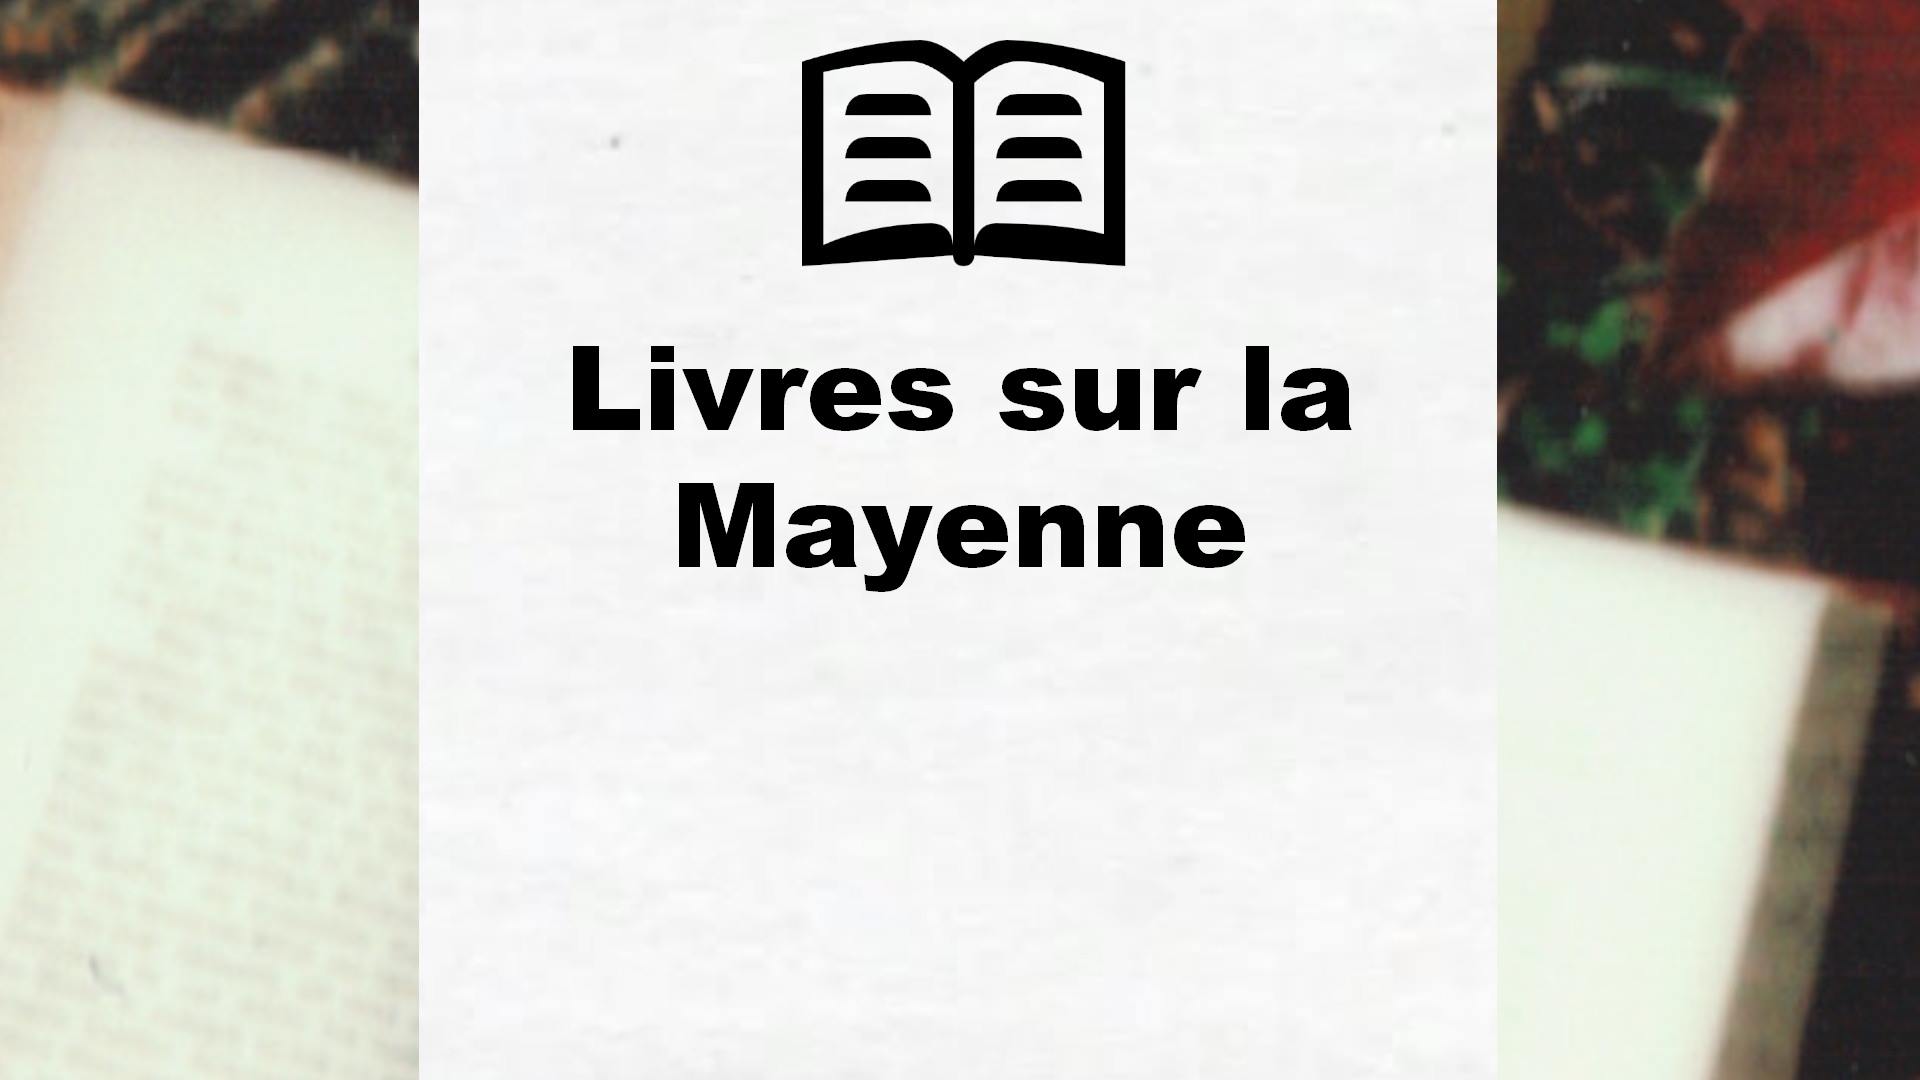 Livres sur la Mayenne